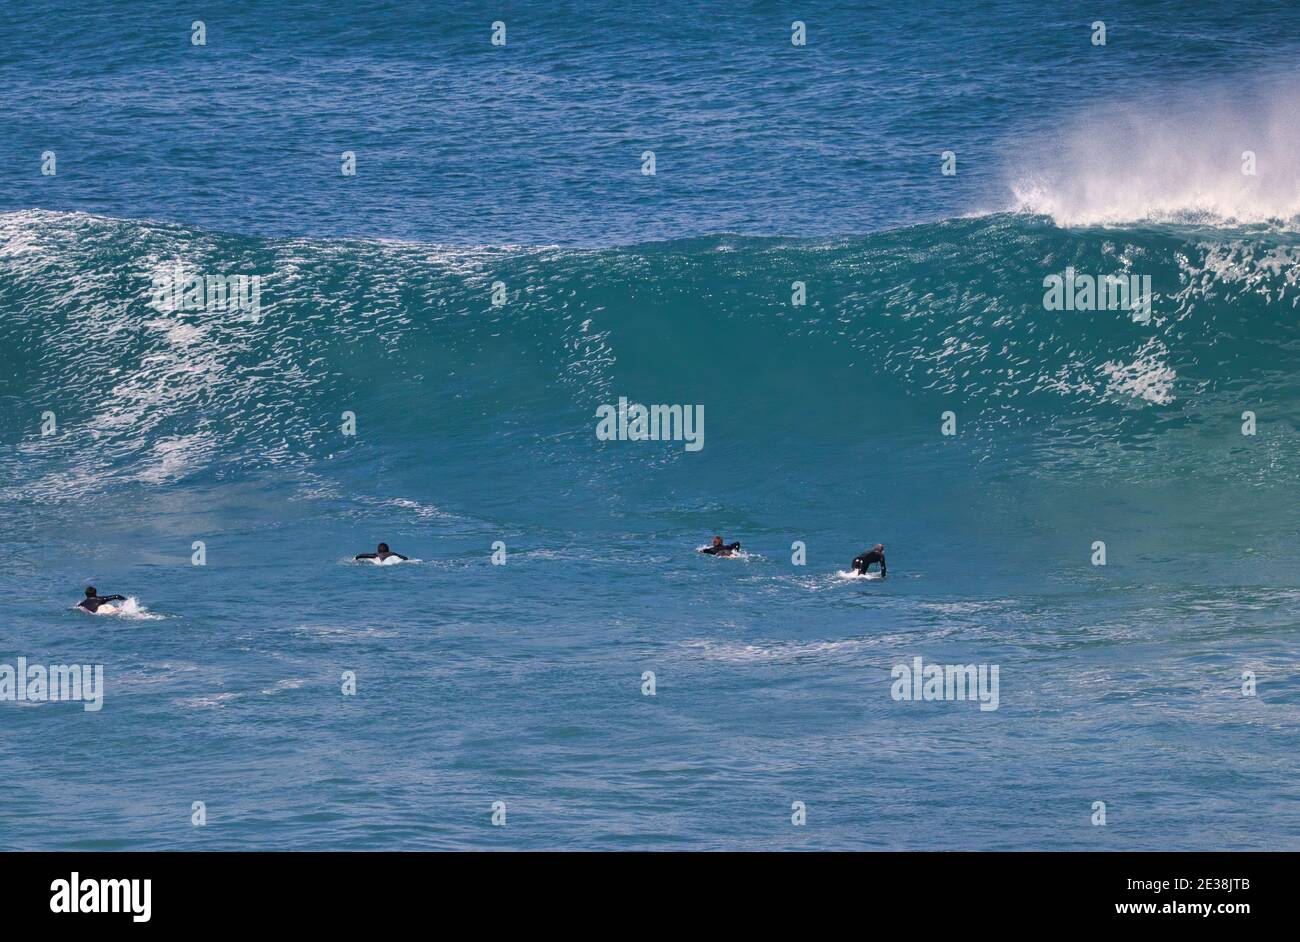 Sehr entfernter Surfer, der auf eine Kurve wartet, um eine Welle zu reiten. Stockfoto